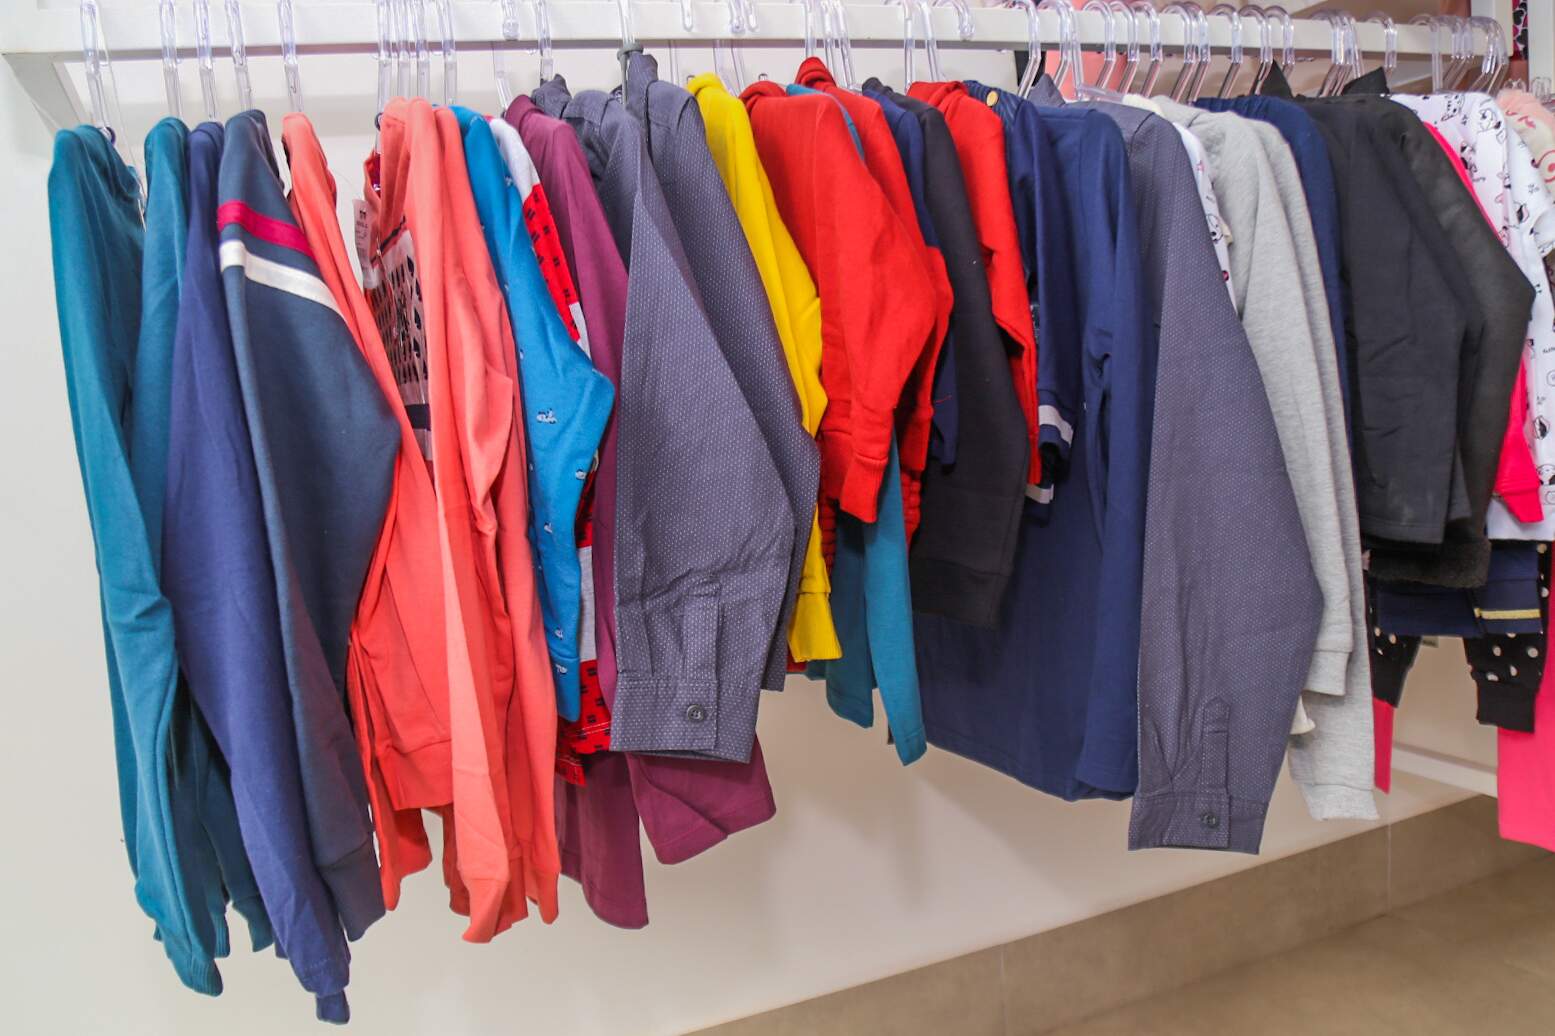 Loja de atacado abre para varejo e liquida estoque de roupa infantil -  Conteúdo Patrocinado - Campo Grande News